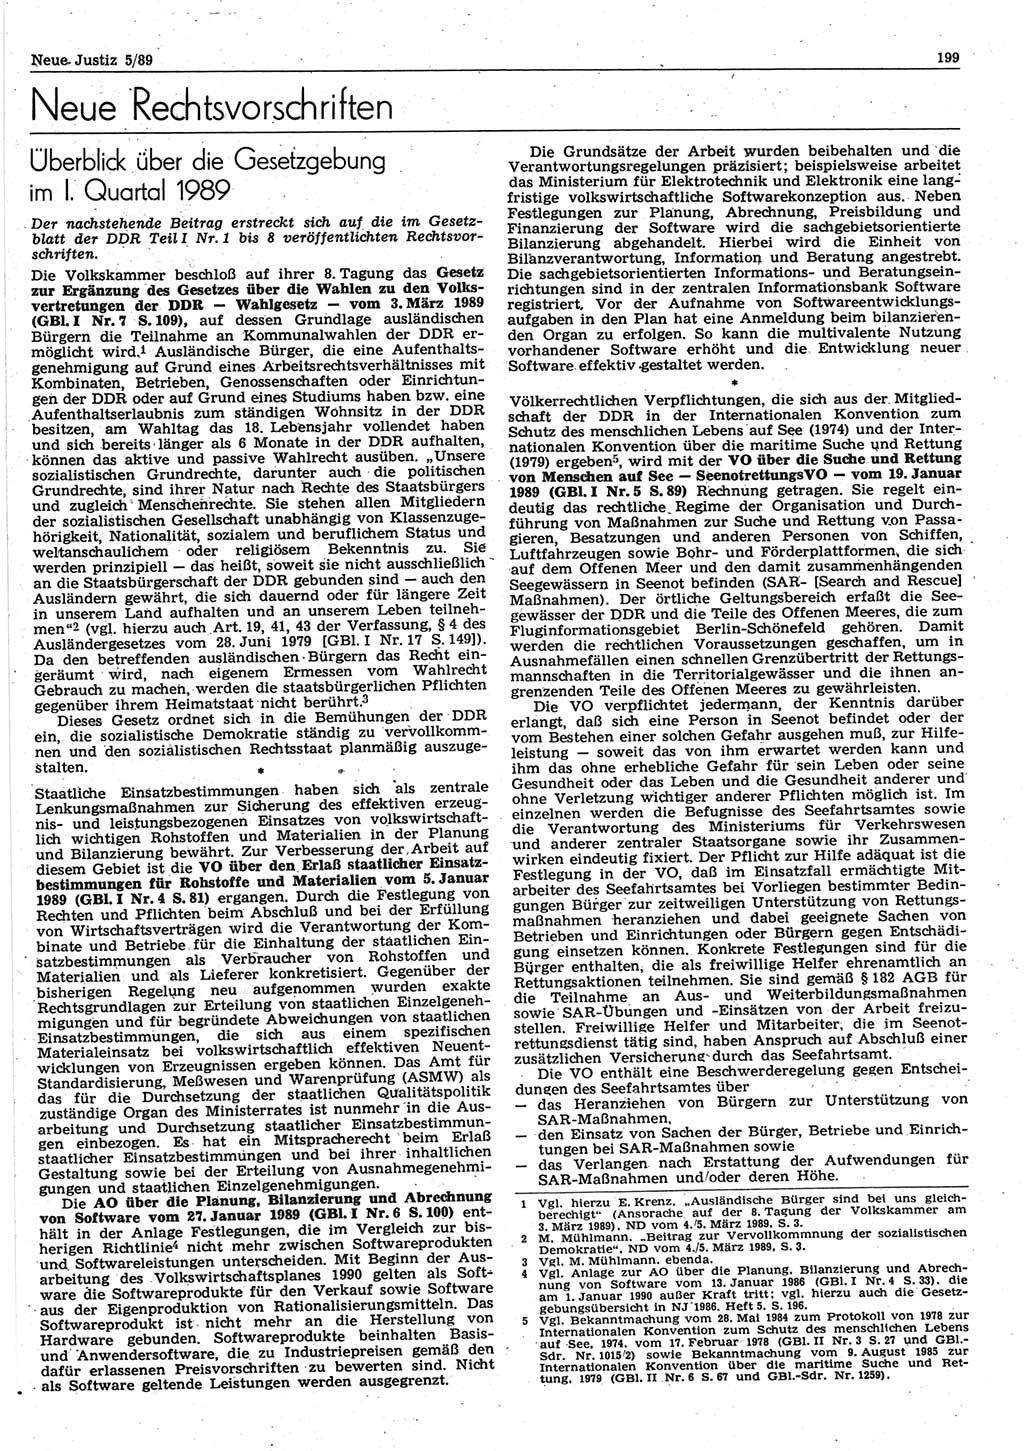 Neue Justiz (NJ), Zeitschrift für sozialistisches Recht und Gesetzlichkeit [Deutsche Demokratische Republik (DDR)], 43. Jahrgang 1989, Seite 199 (NJ DDR 1989, S. 199)